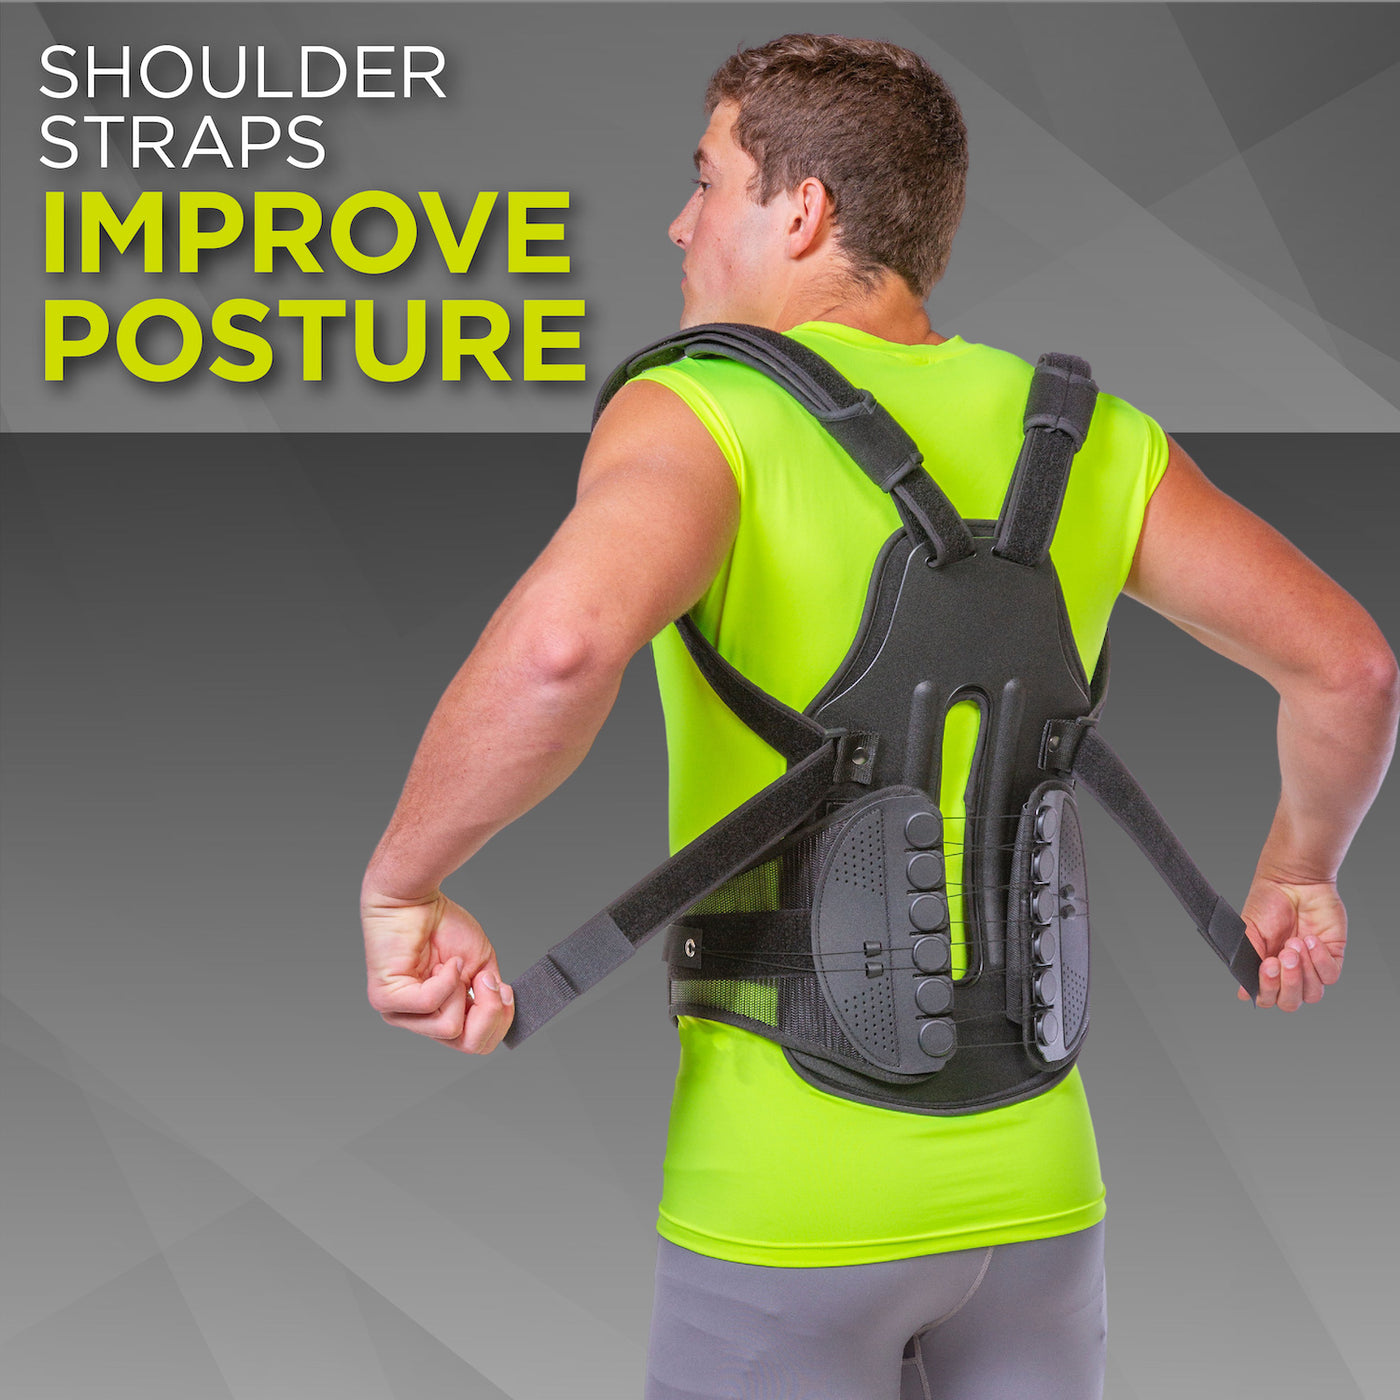 The BraceAbility full back posture corrector brace has adjustable shoulder straps to promote good posture